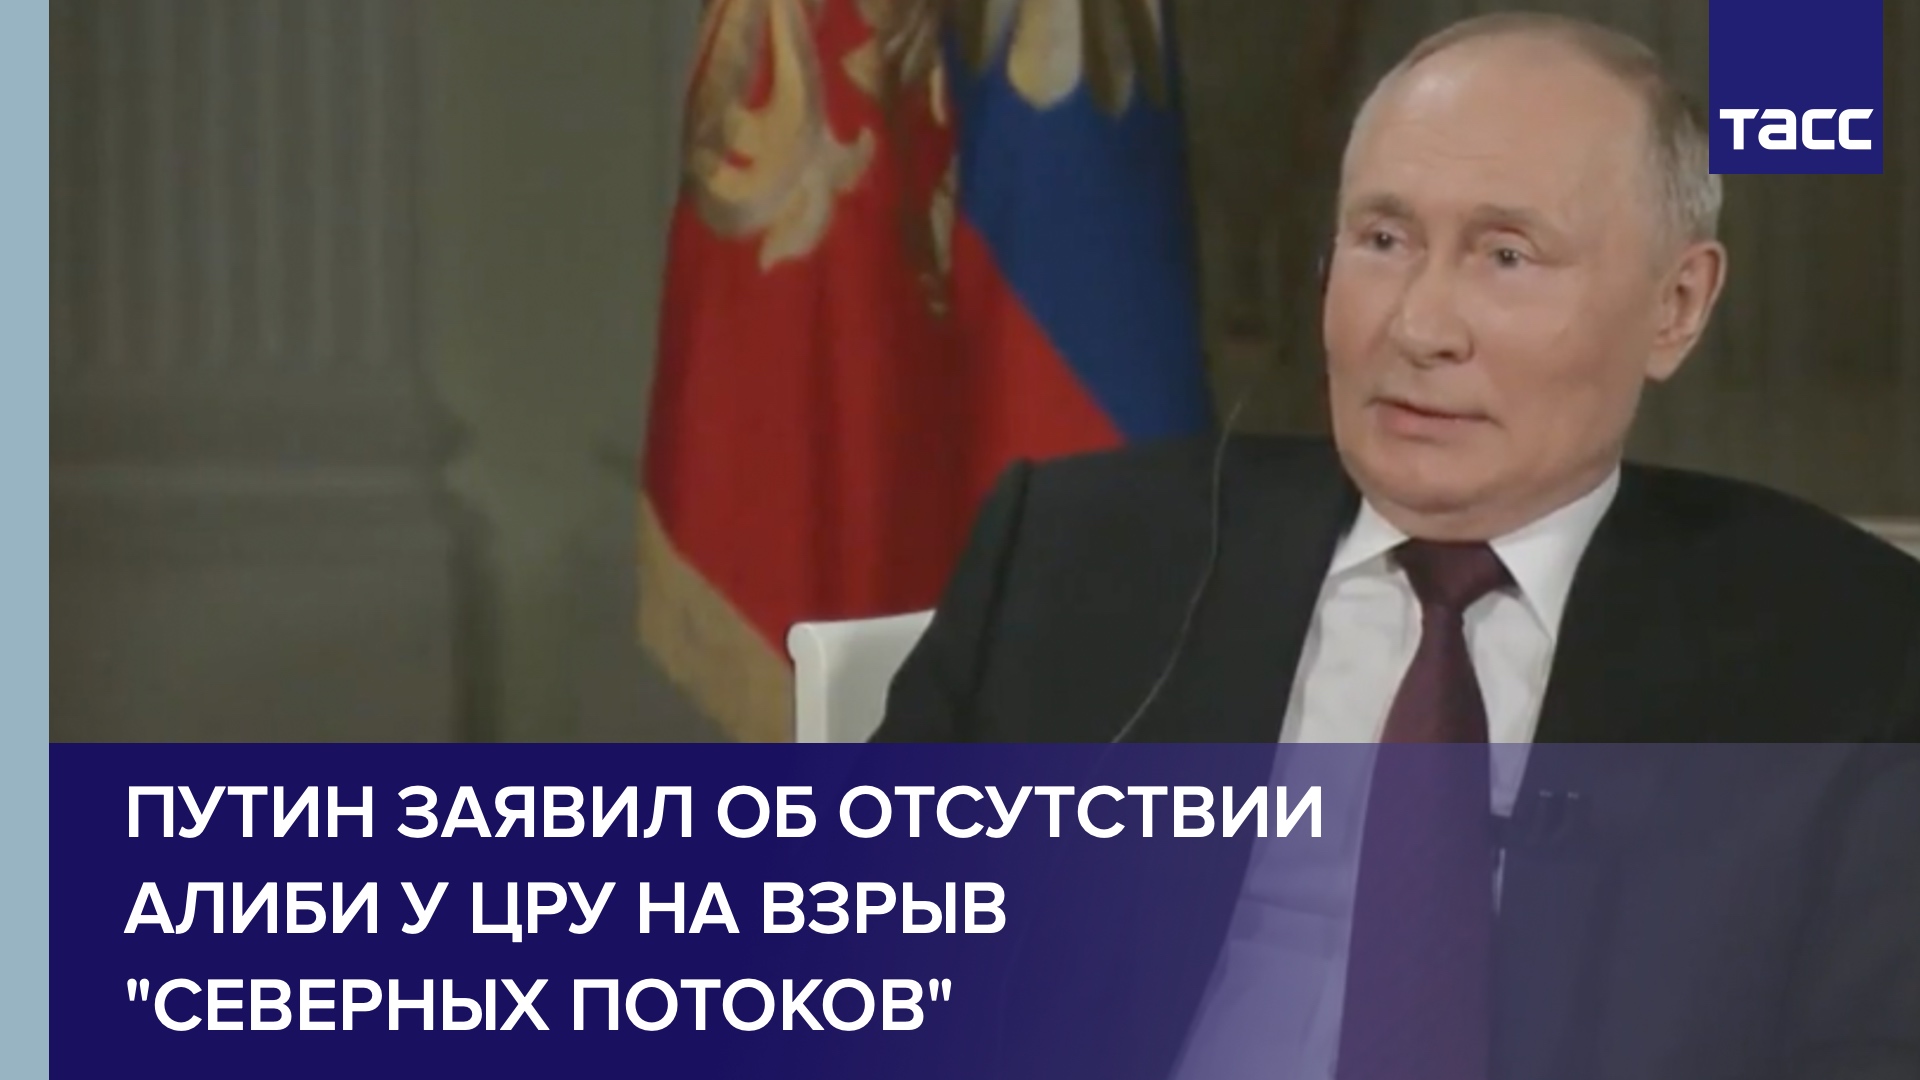 Путин заявил об отсутствии алиби у ЦРУ на взрыв "Северных потоков"